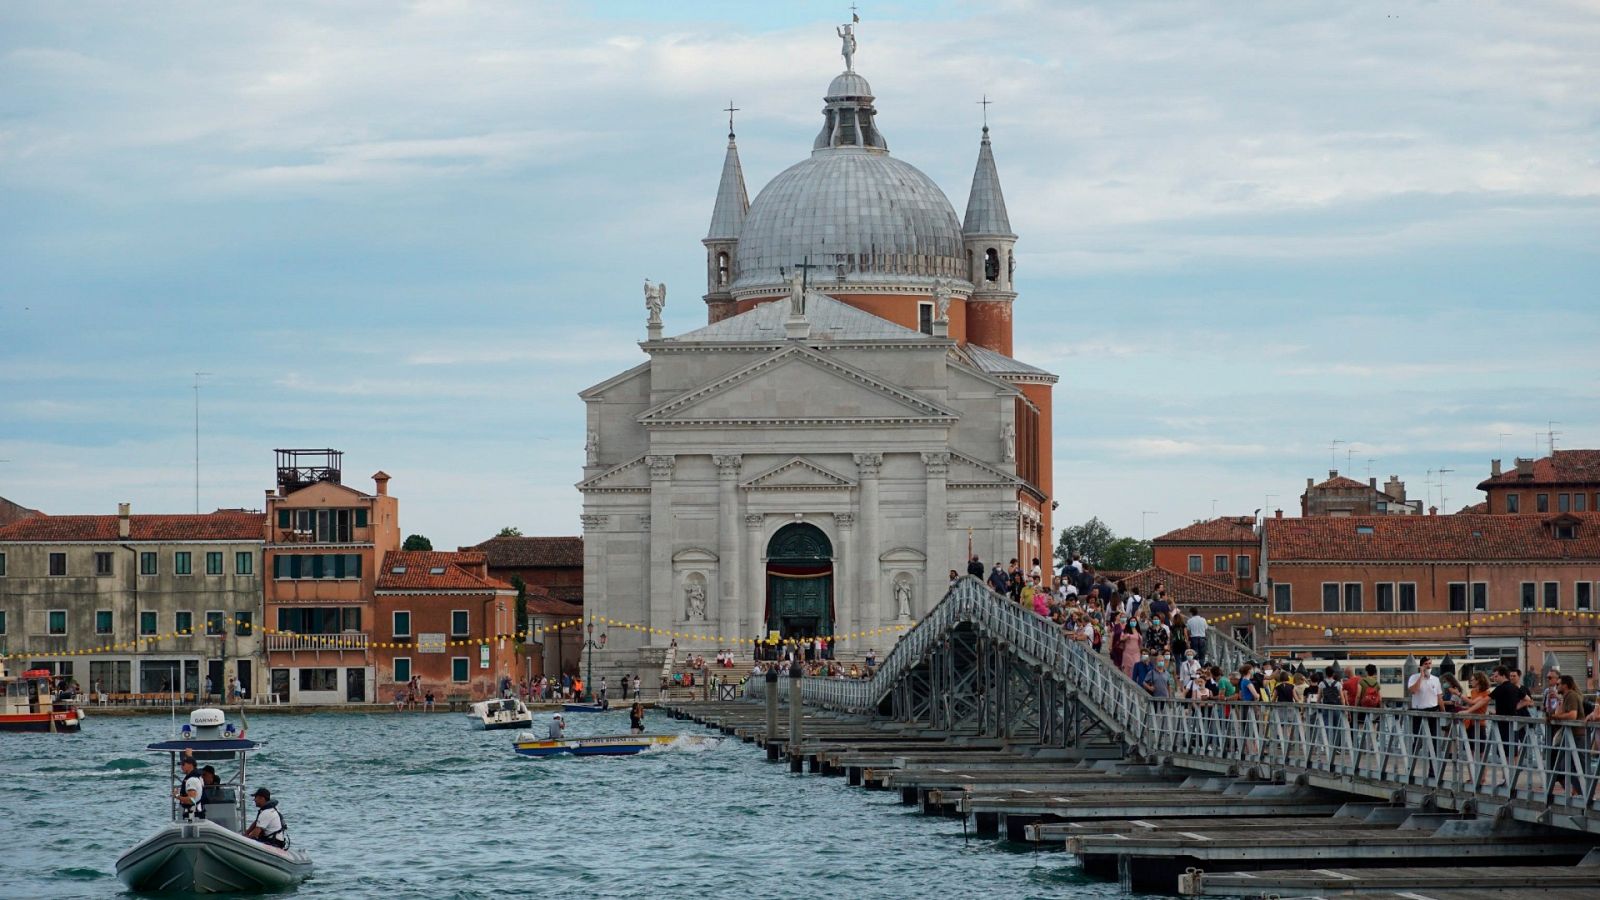 Peregrinos y turistas cruzan el puente que conecta las orillas opuestas del Canal de la Giudecca, para llegar a la Iglesia del Redentor, en vísperas de la Festa del Redentore en Venecia, Italia